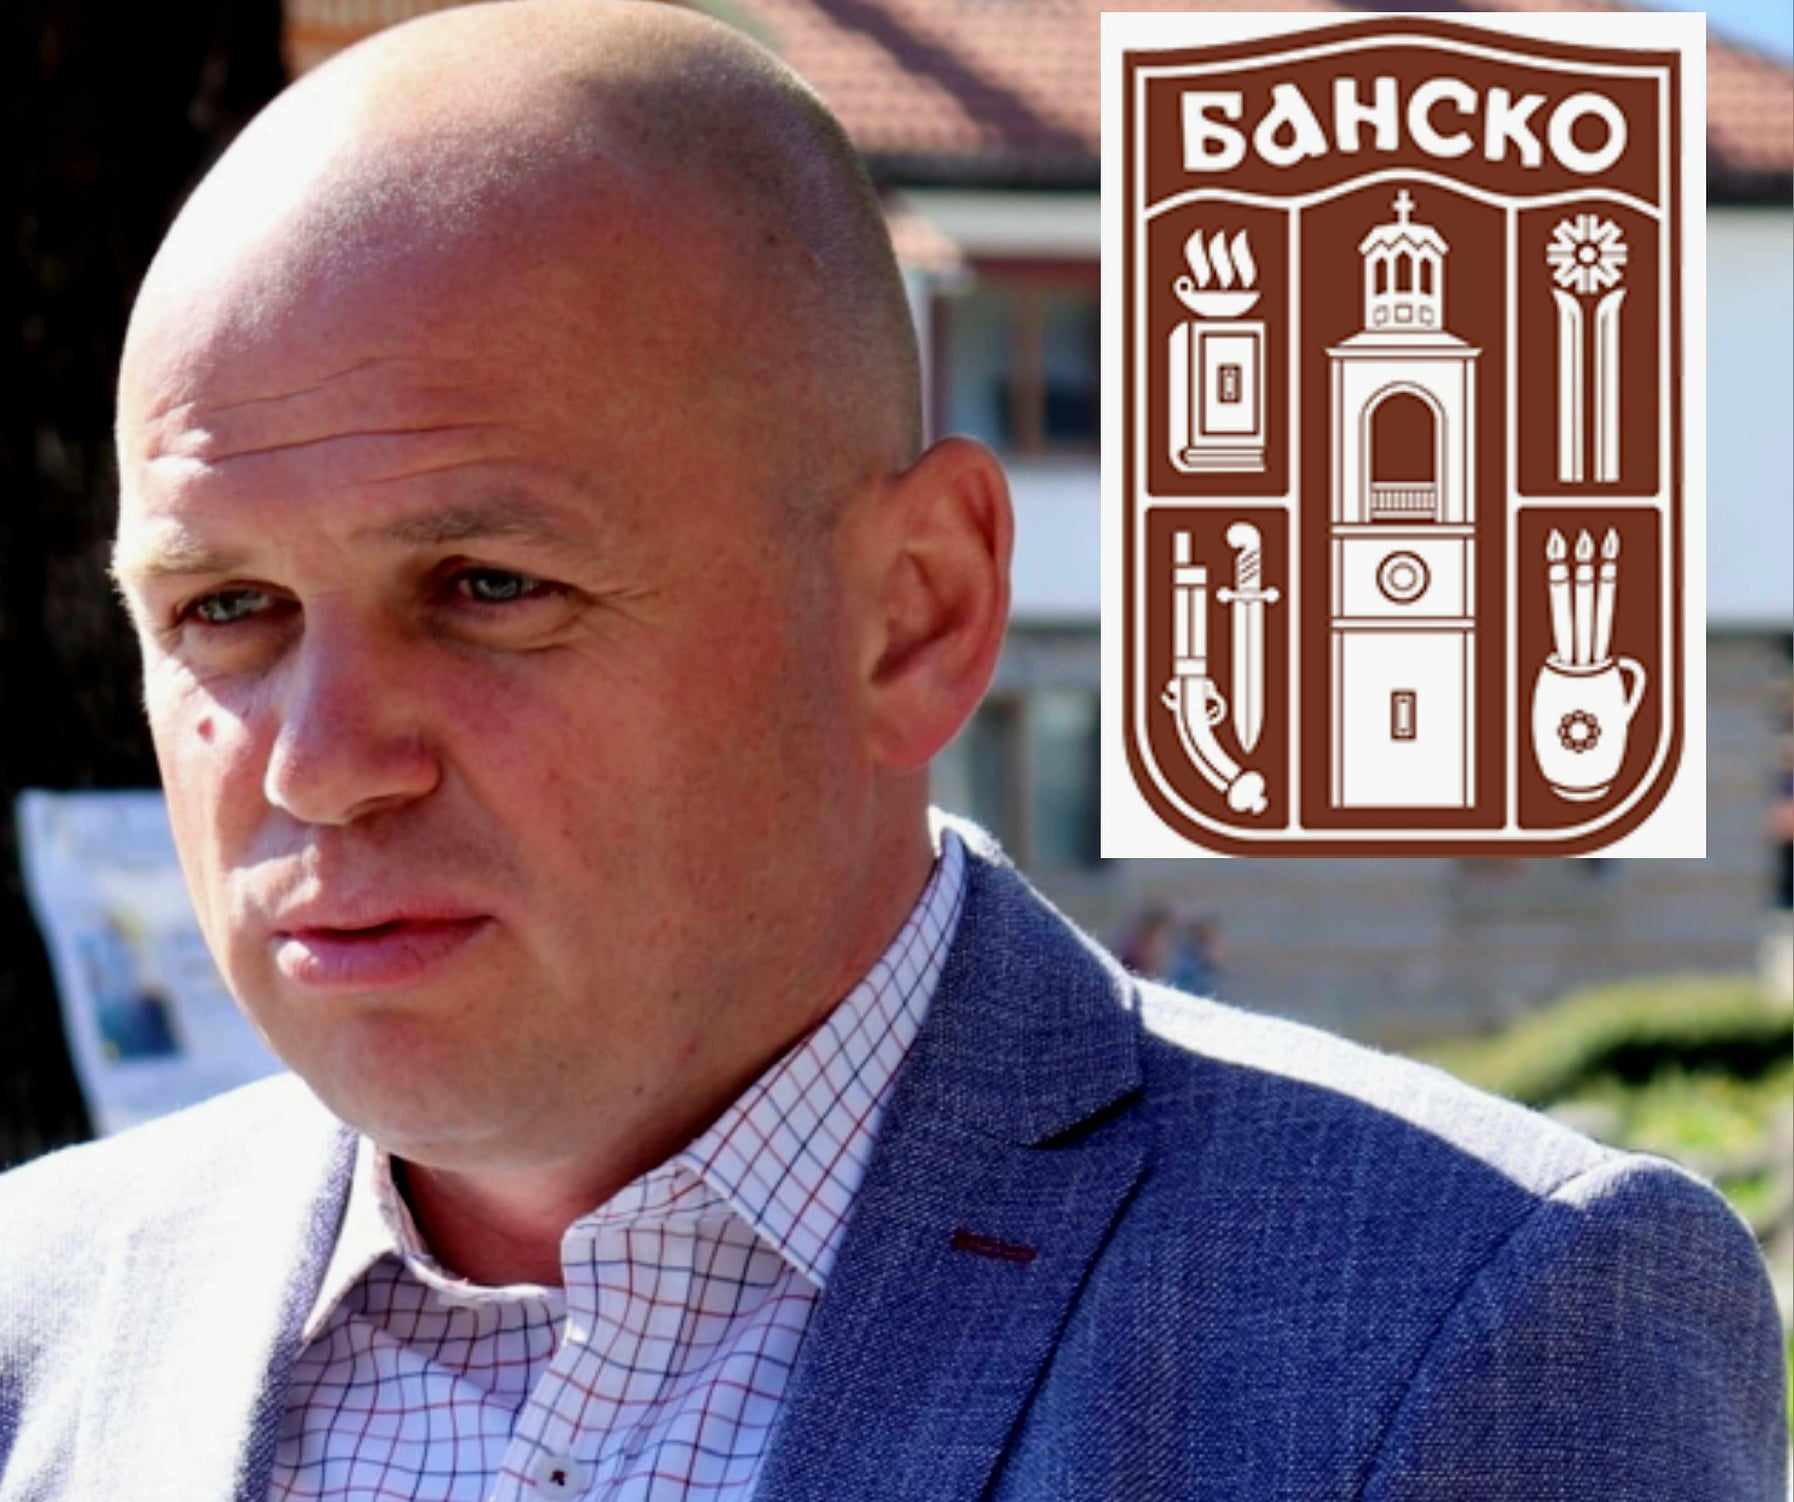 Зам.-кметът на Банско Стoйчо Баненски се регистрира за изборите като независим кандидат